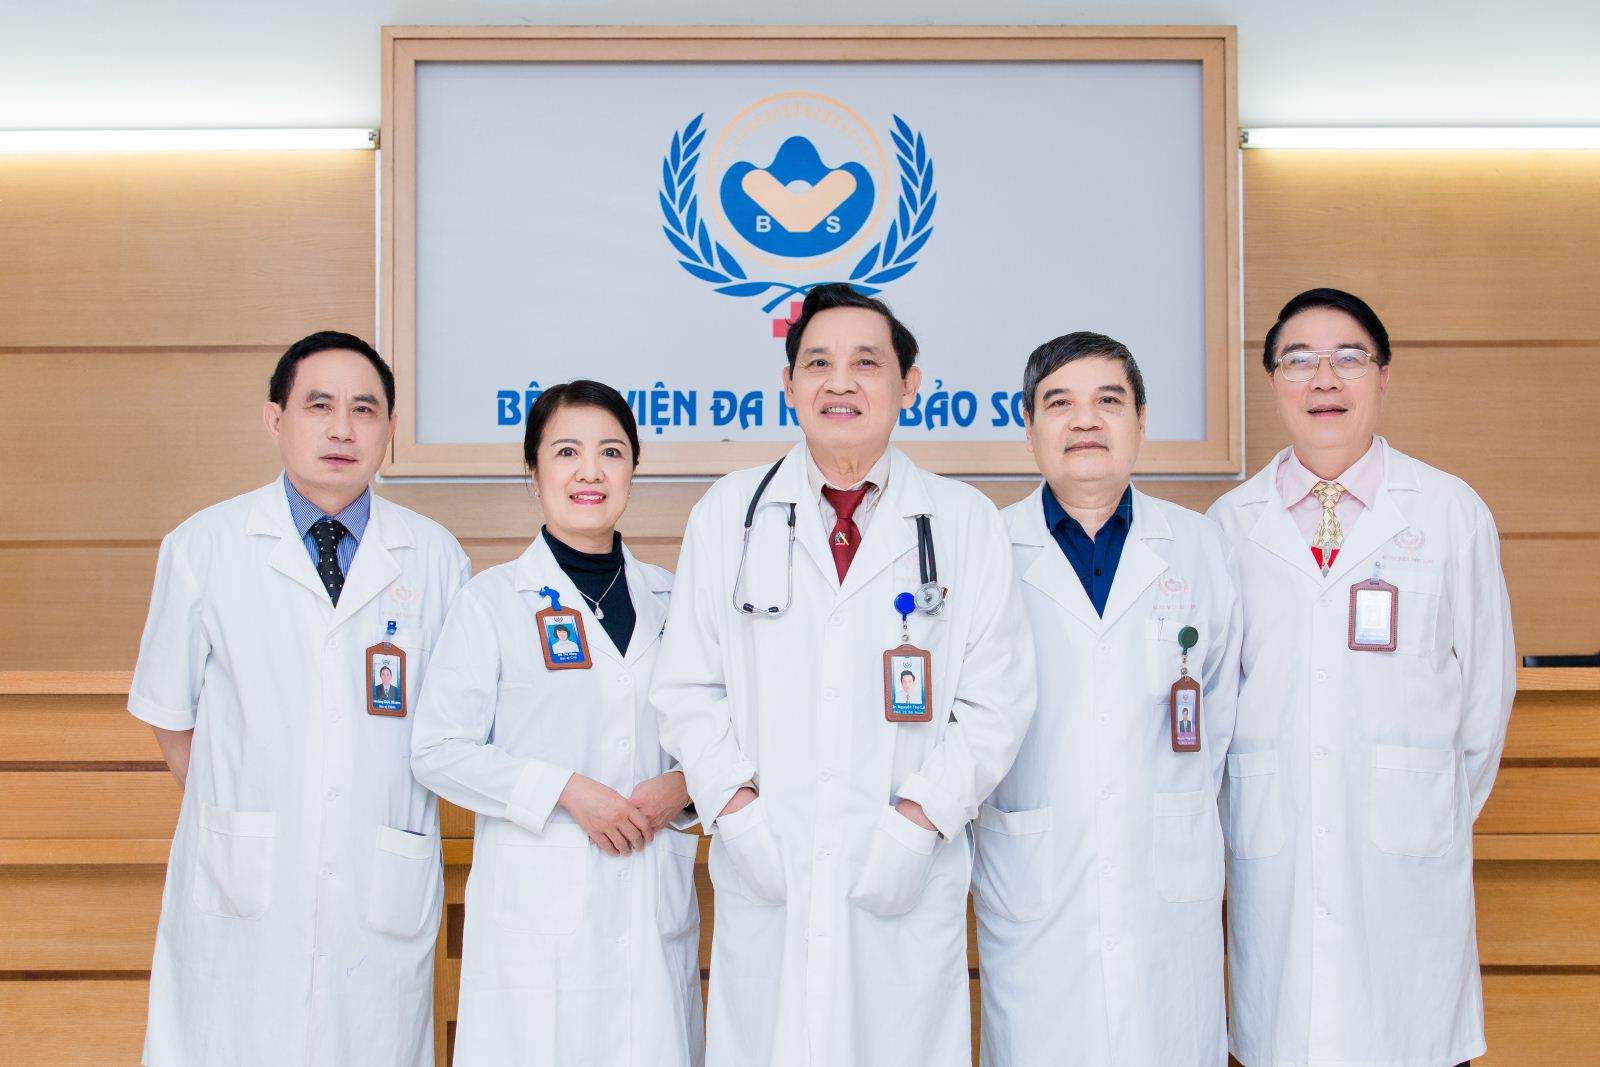 Đội ngũ bác sĩ bệnh viện đa khoa Bảo Sơn